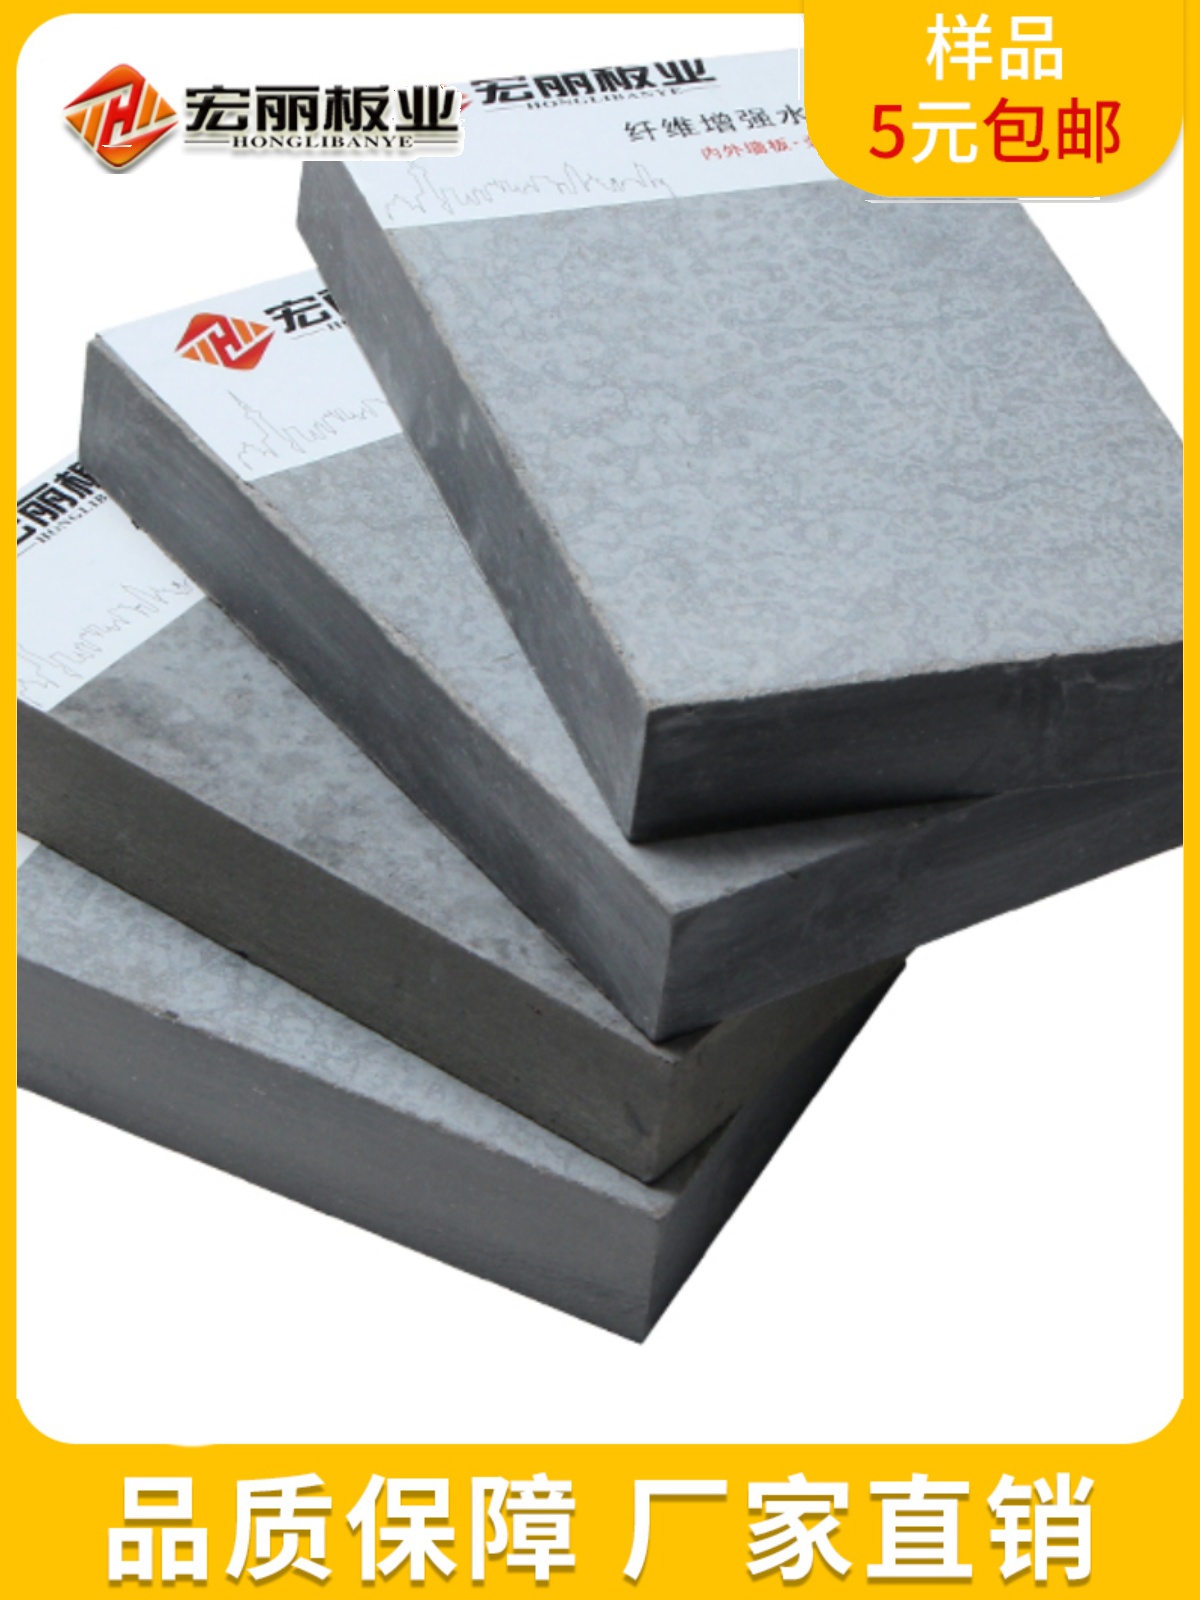 楼层板LOFT钢结构楼板水泥板隔层承重板屋面板压力板夹层阁楼板